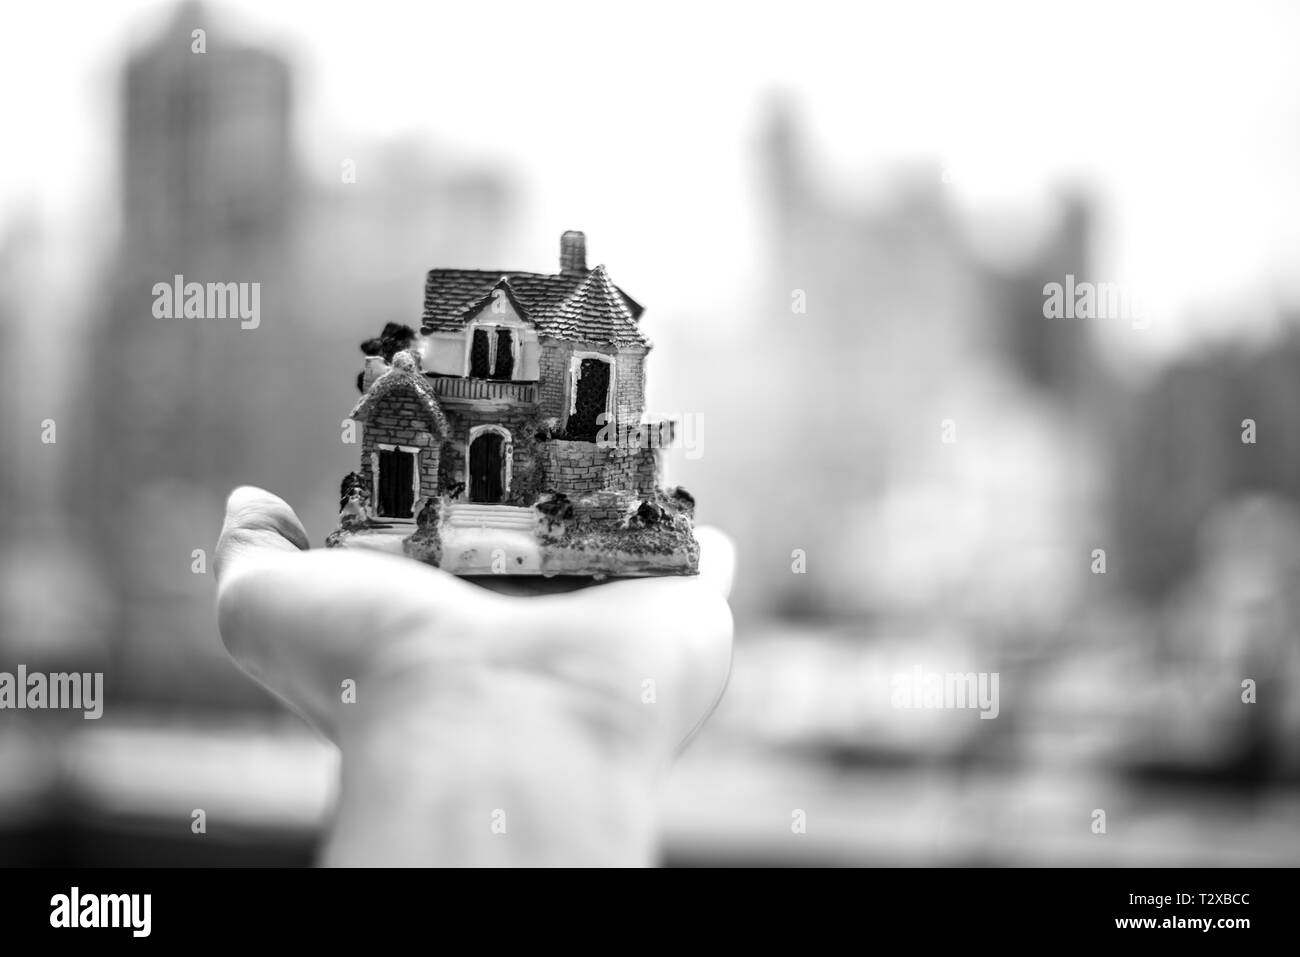 Maison Miniature sur une main avec NYC skyline en arrière-plan Banque D'Images